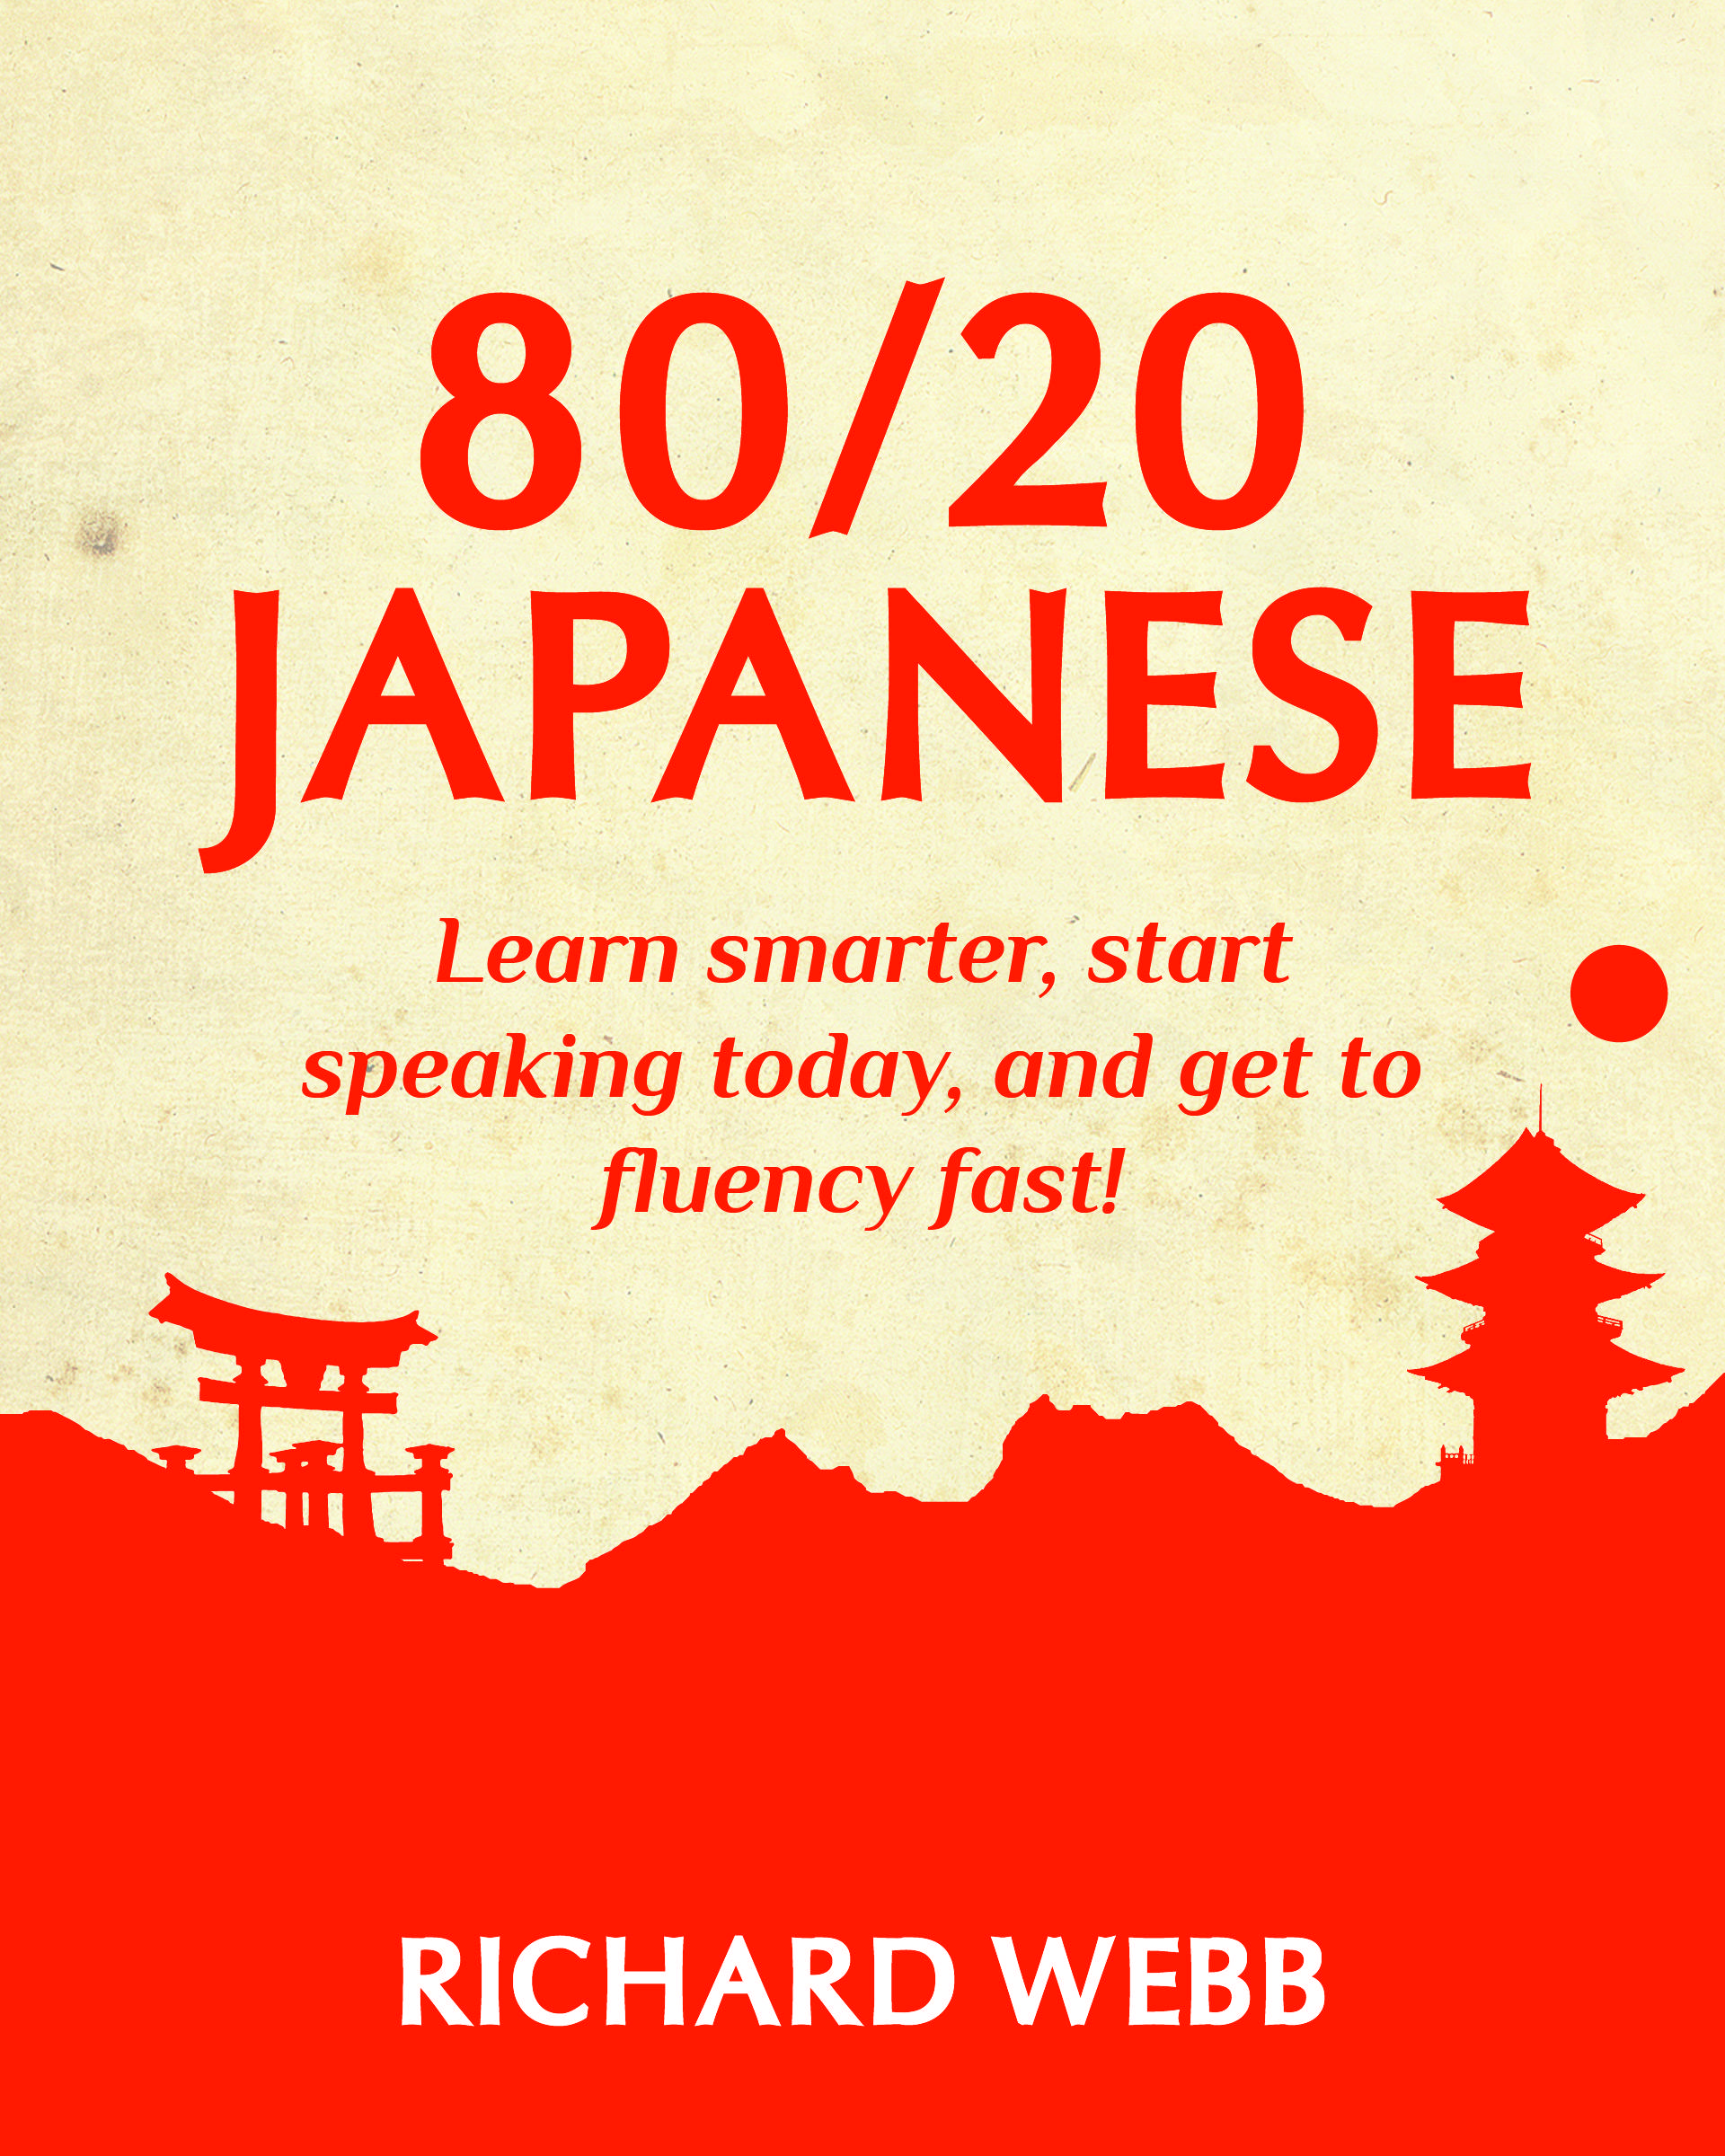 80/20 japanese book pdf free download